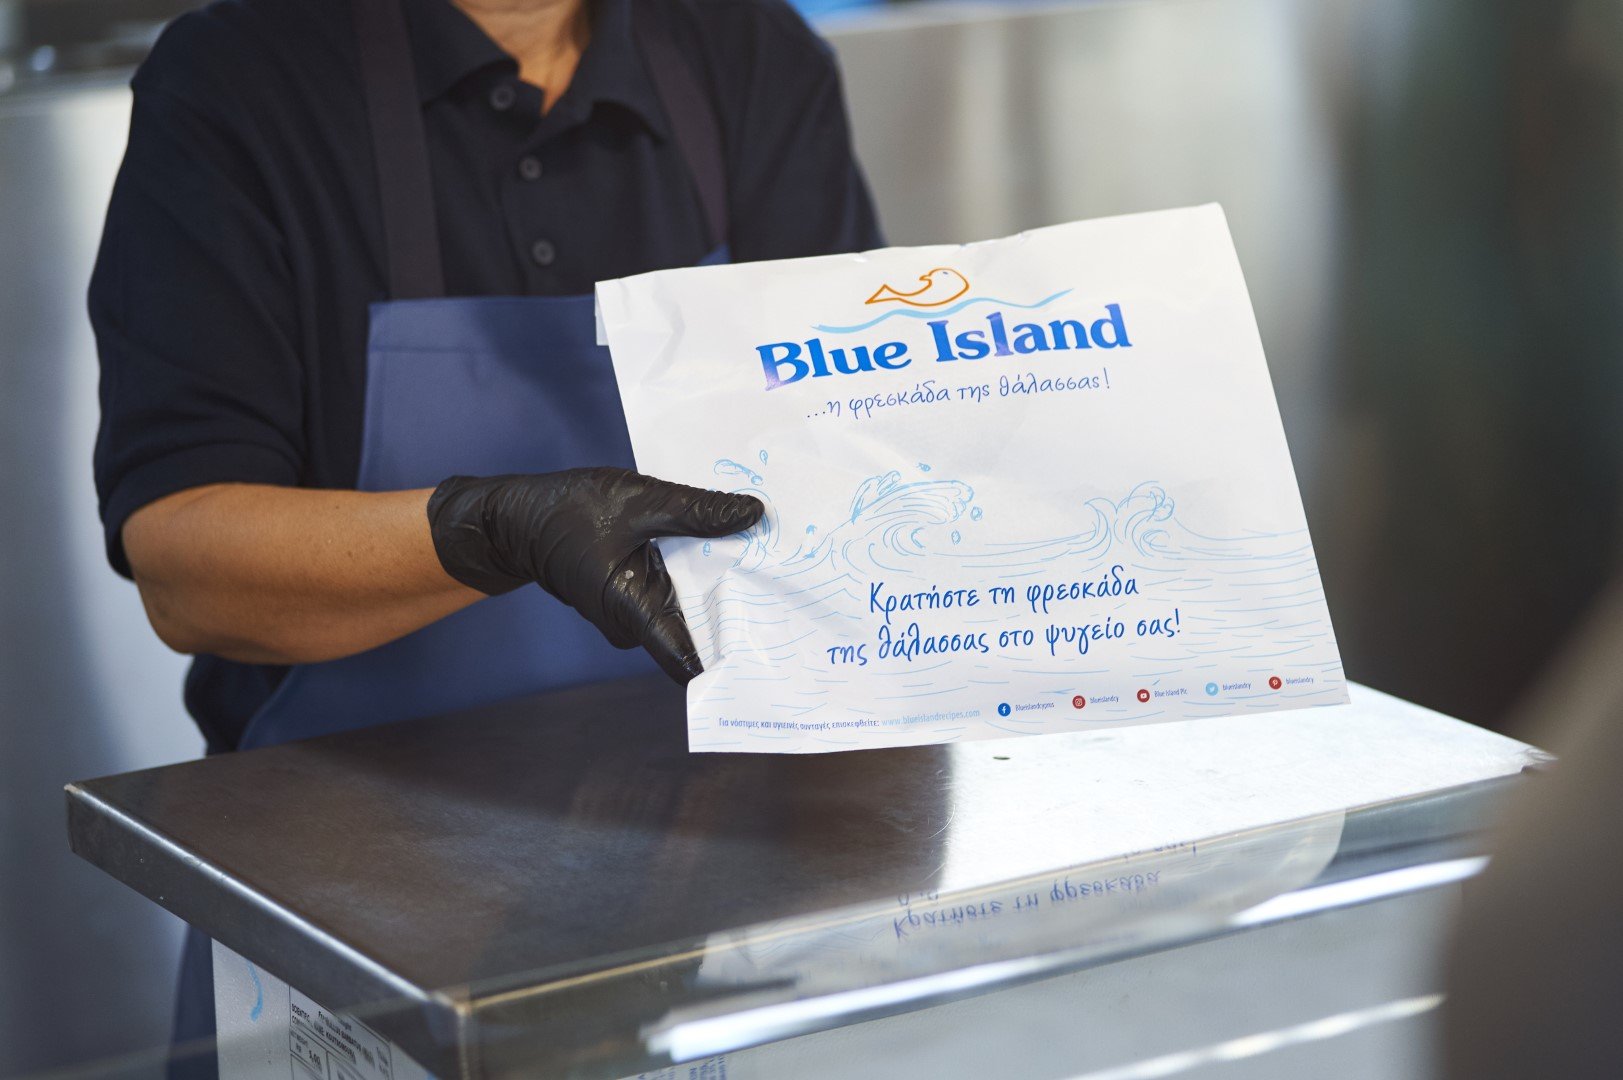 Κενή θέση εργασίας στην Blue Island